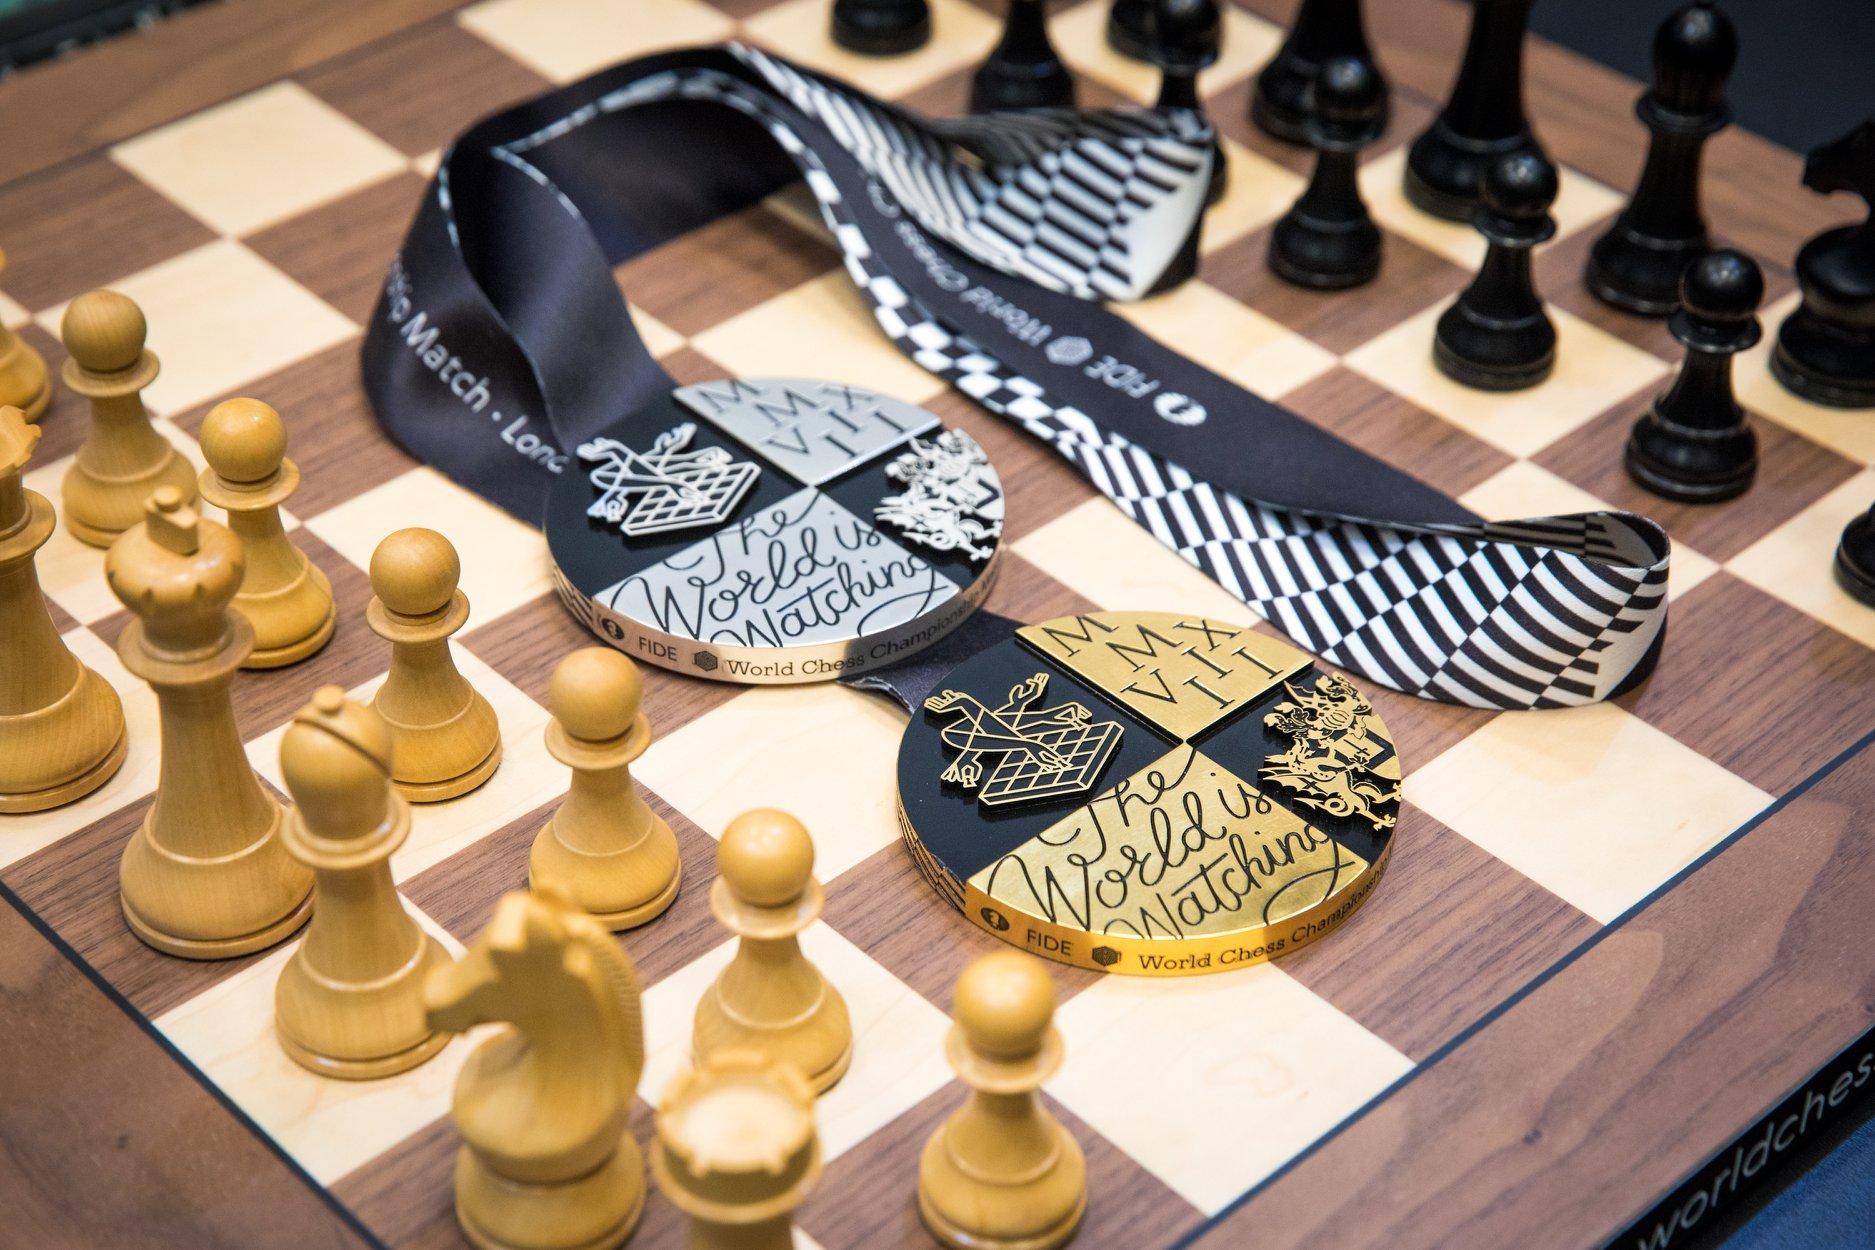 Alekhine - Bogoljubov. World Chess Championship 1929. Game 9